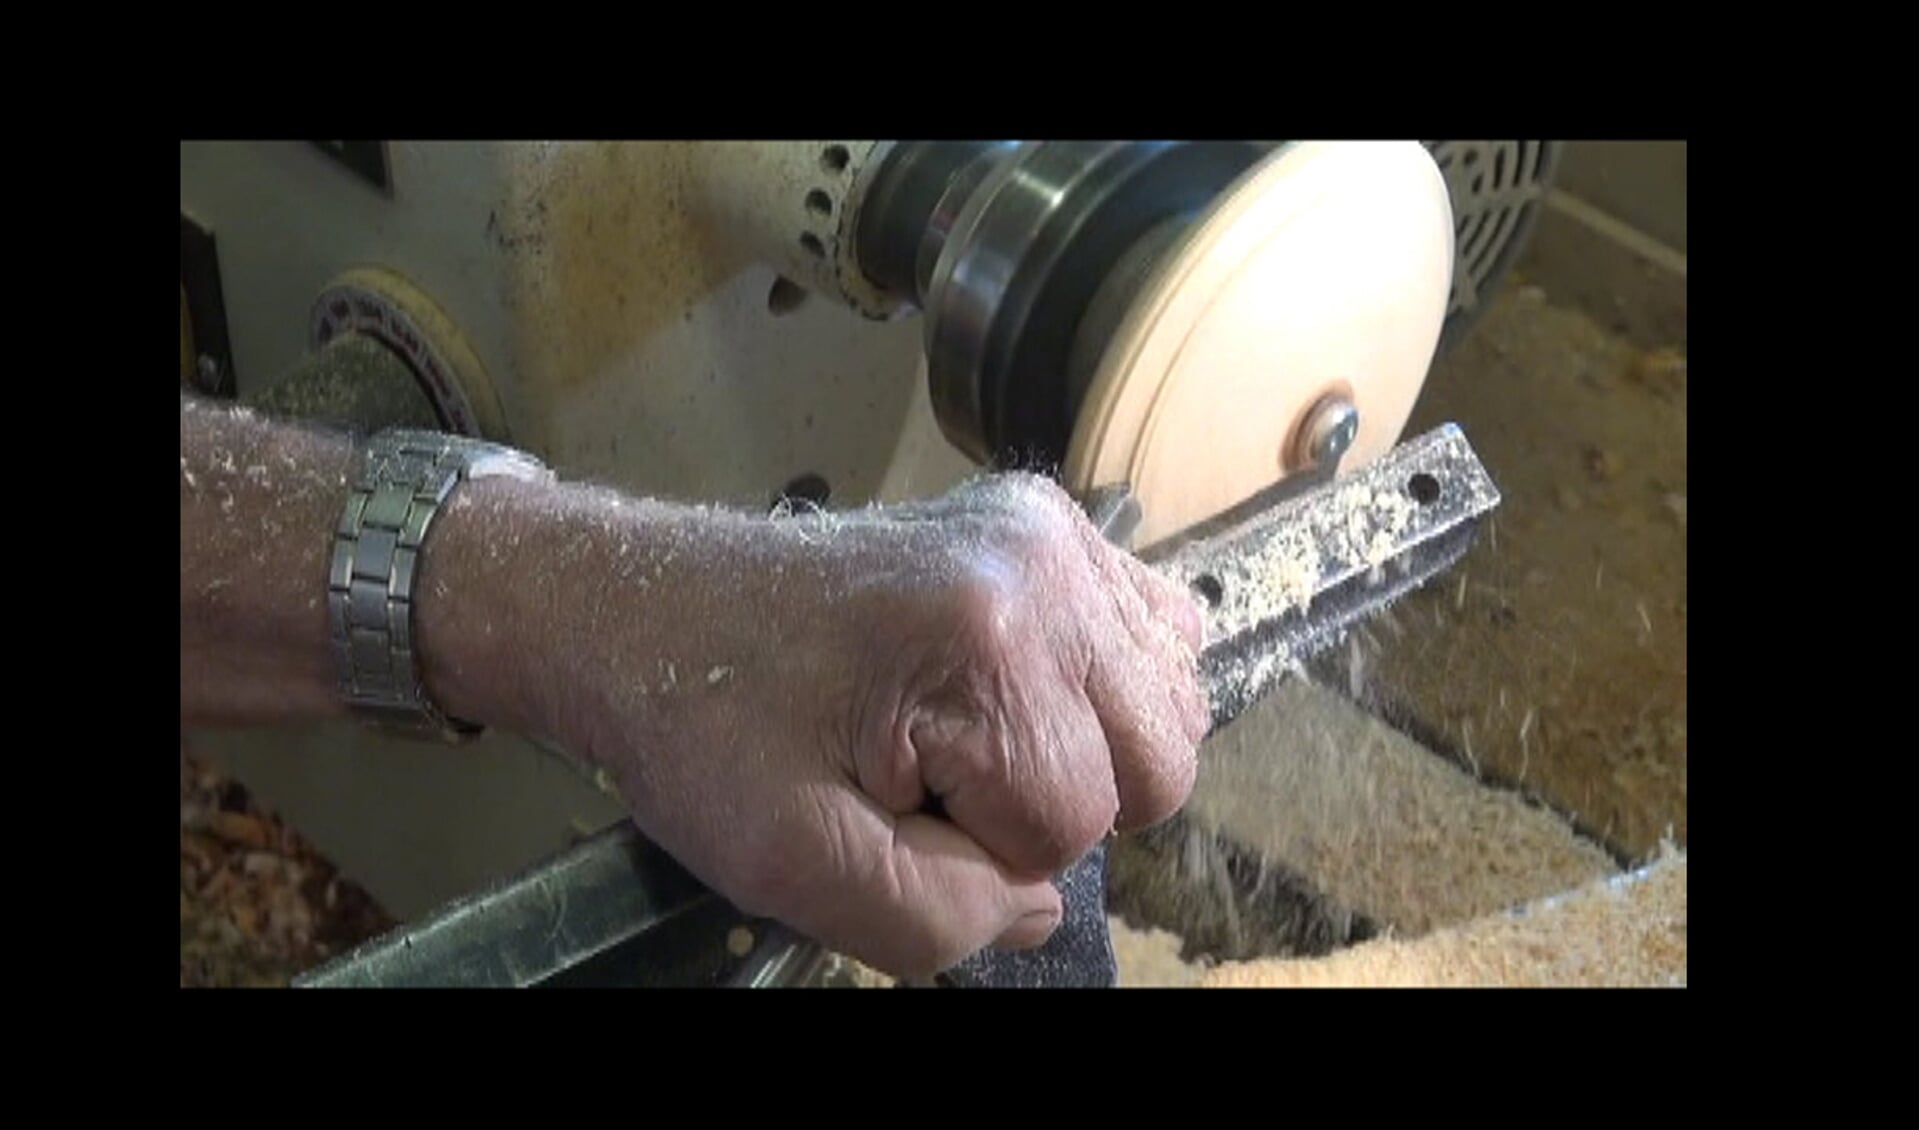 Vaardige handen bedienen de moderne draaibank. Vormen het ruwe stuk hout tot een fraai product.